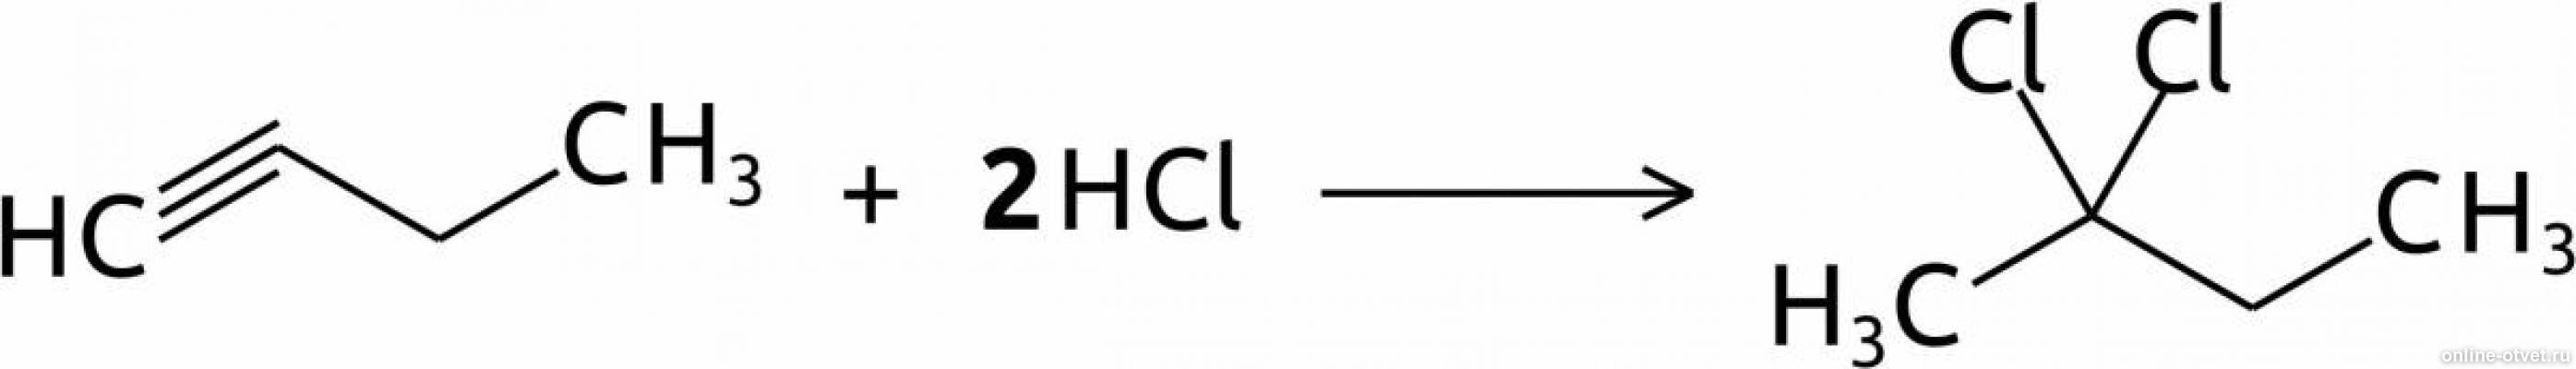 Бутин 1 продукт реакции. Бутин-1 +2hcl. Бутин HCL. Бутин 2 2hcl. Бутина-1 с HCL.